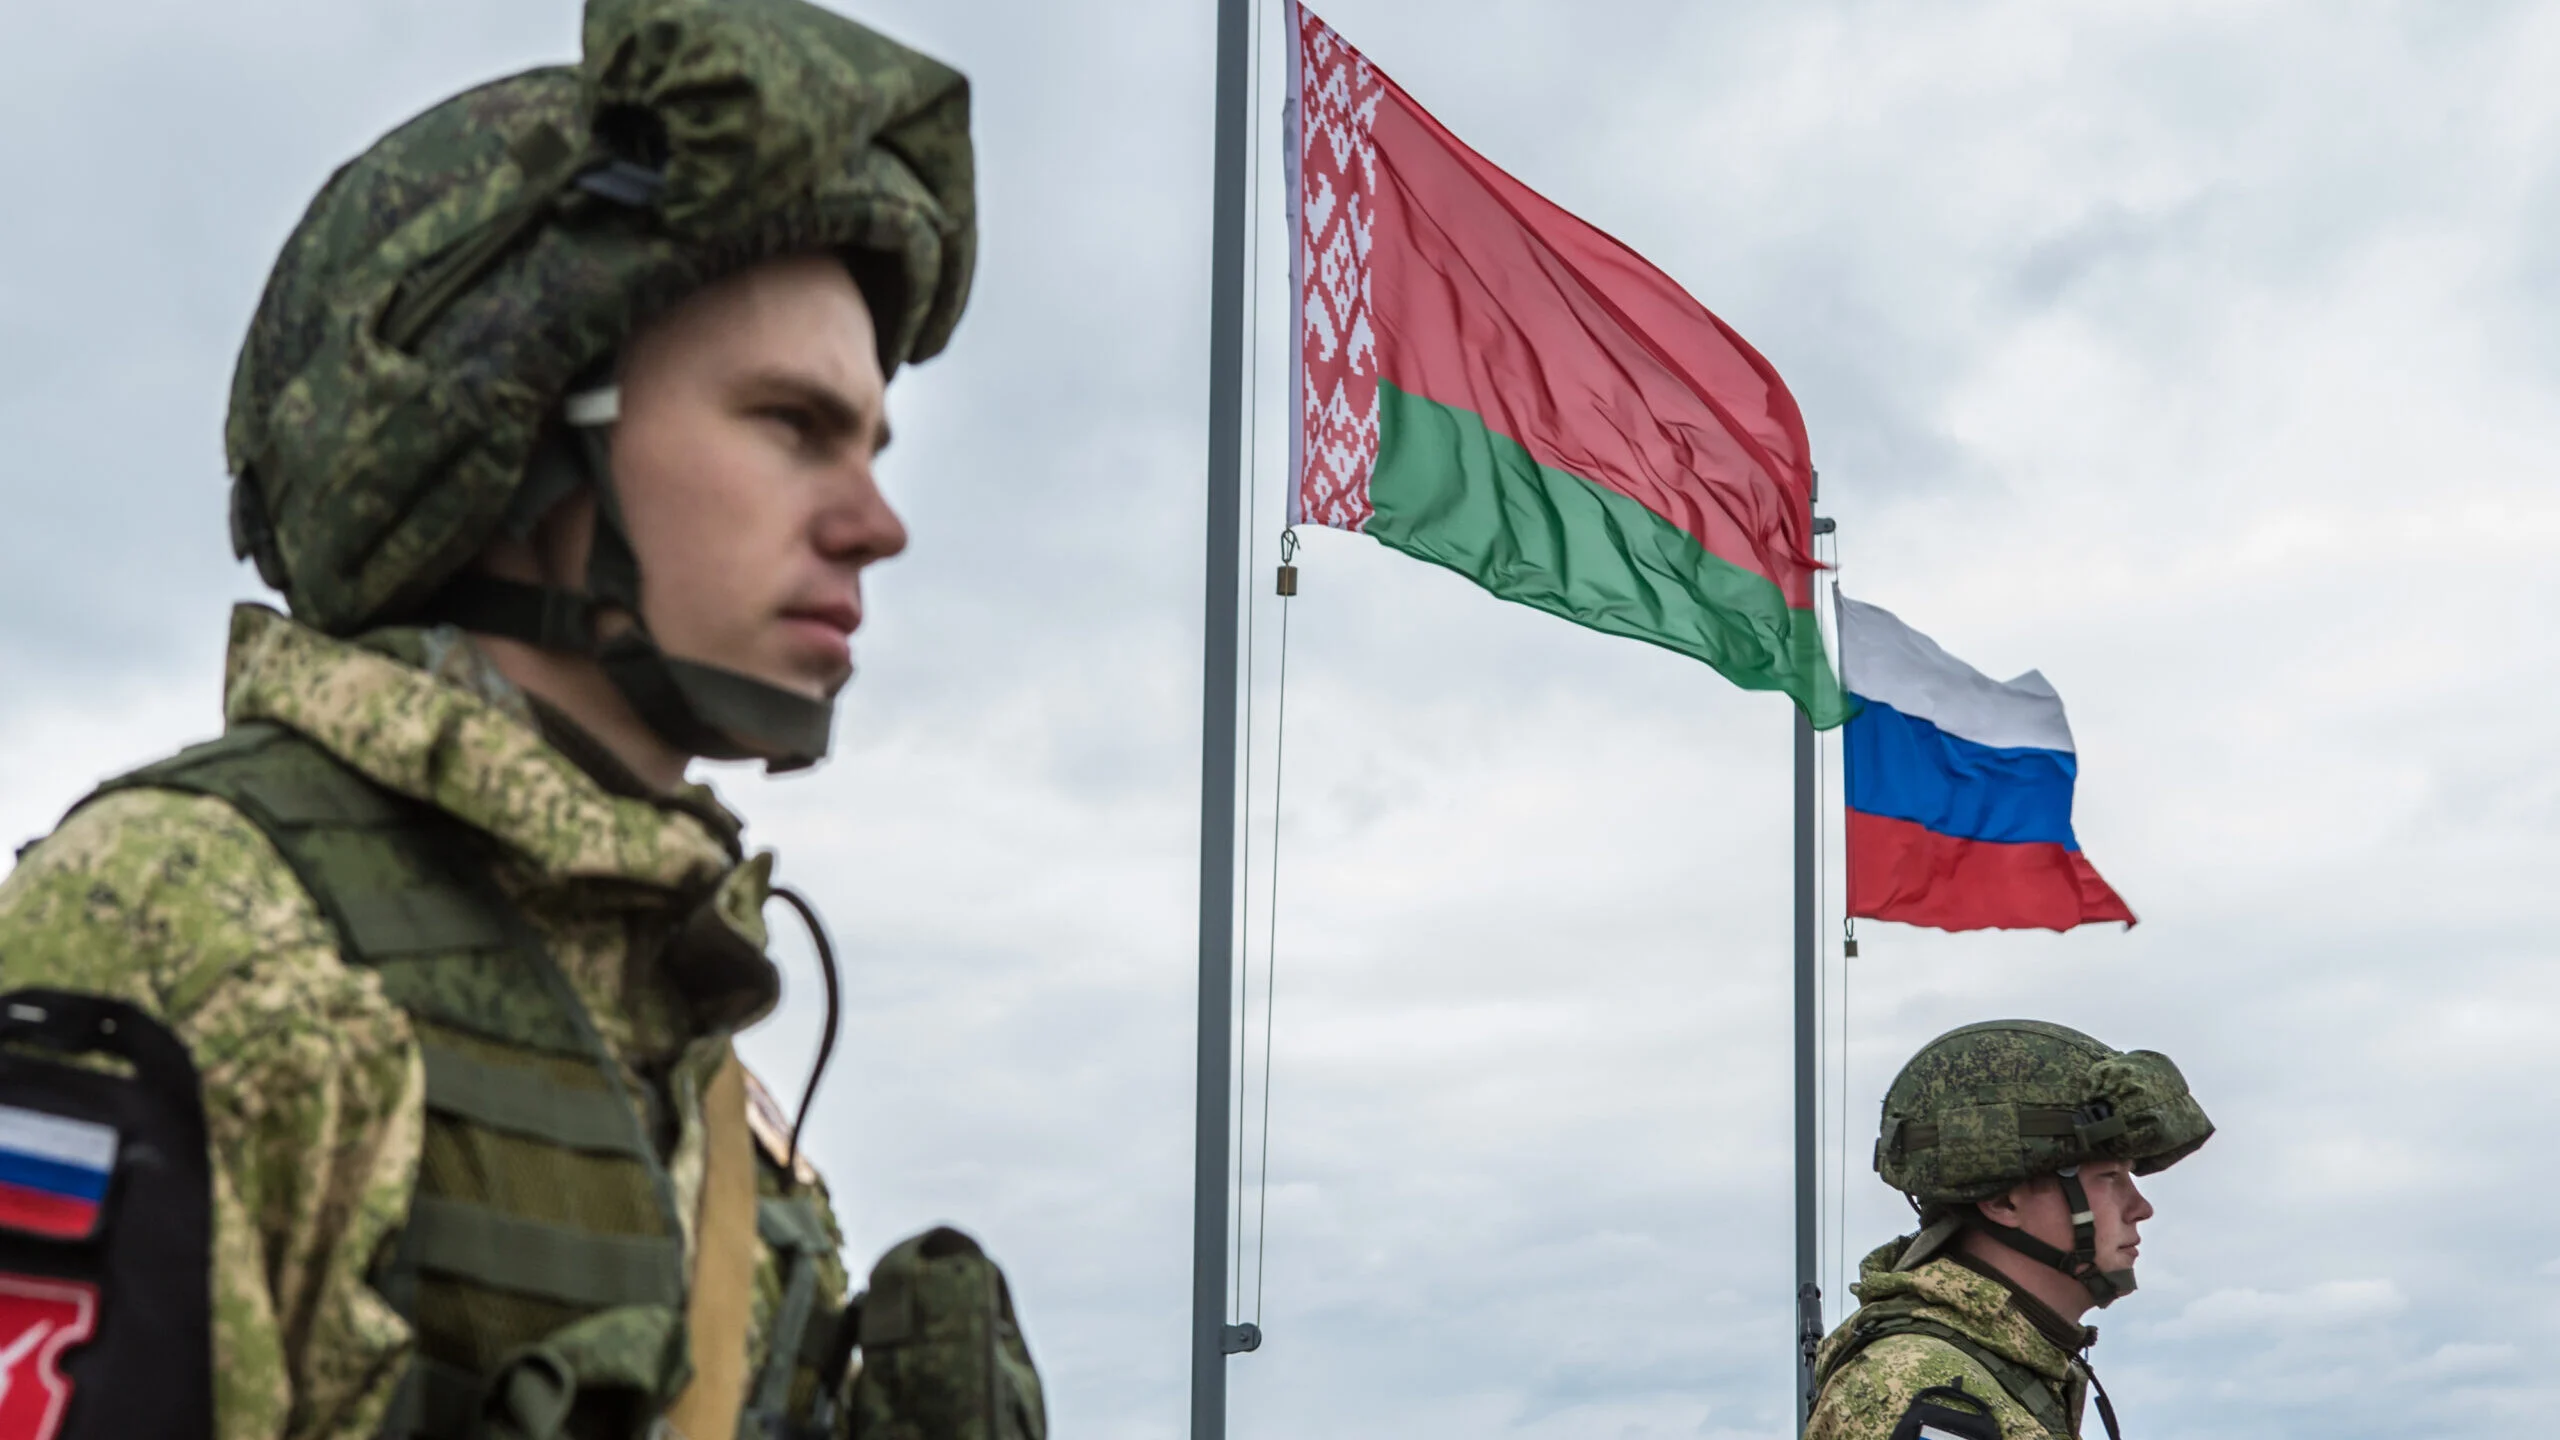 Δημιουργία κοινού στρατιωτικού σώματος Ρωσίας-Λευκορωσίας για την αντιμετώπιση απειλών άμυνας